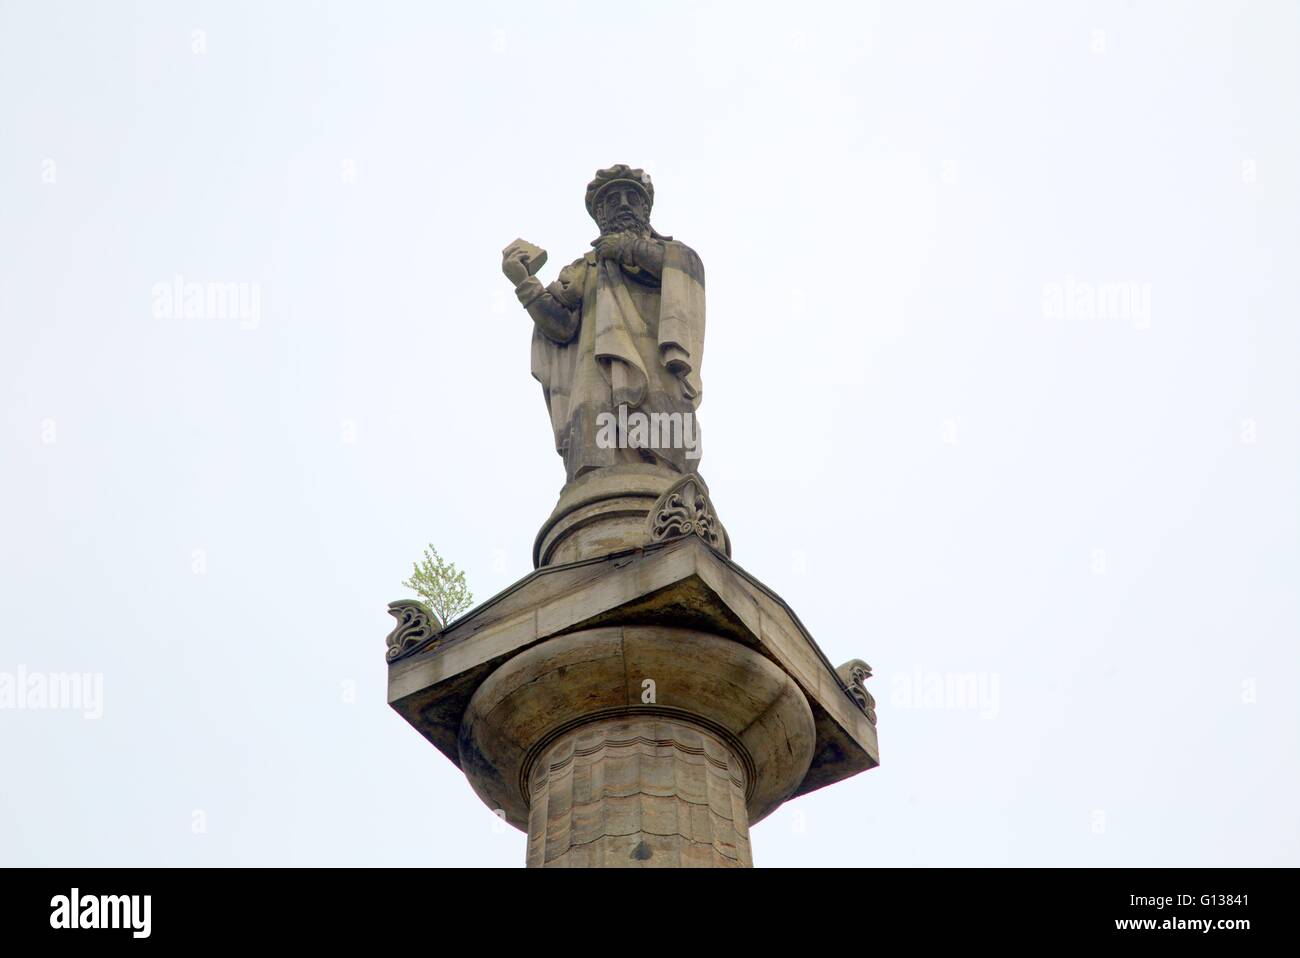 Pierre tombale monument statue de et en commémoration de la Nécropole calviniste John Knox, Glasgow. L'Écosse, Royaume-Uni Banque D'Images